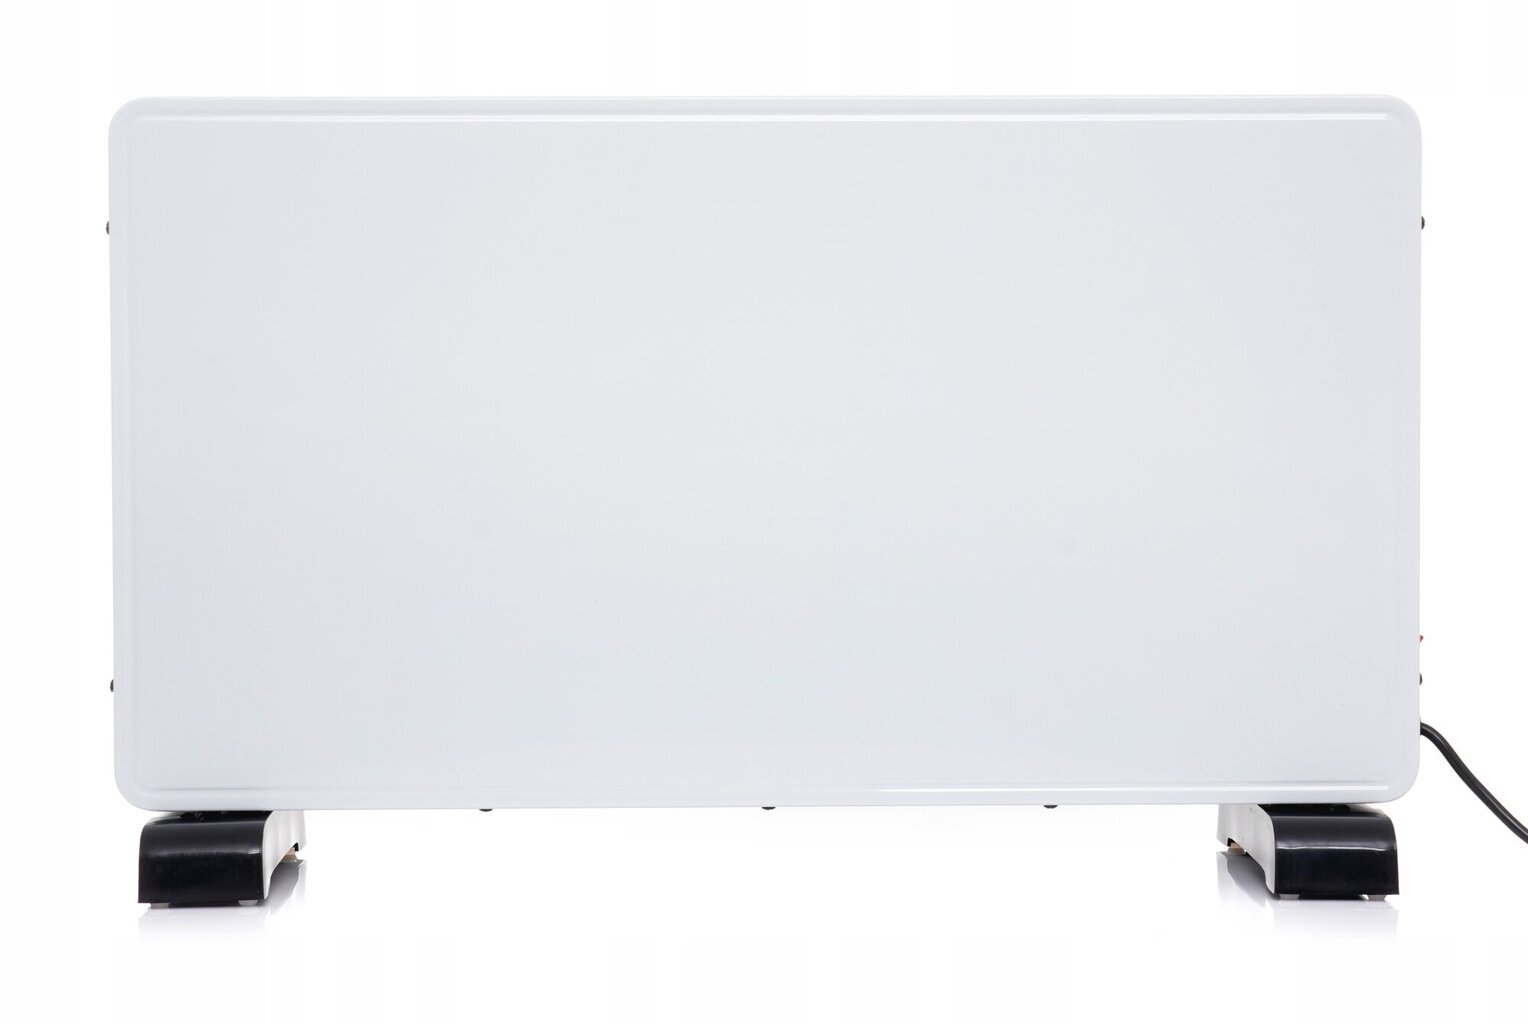 Konvekcinis išmanusis šildytuvas Tagred 2300 W kaina ir informacija | Šildytuvai | pigu.lt